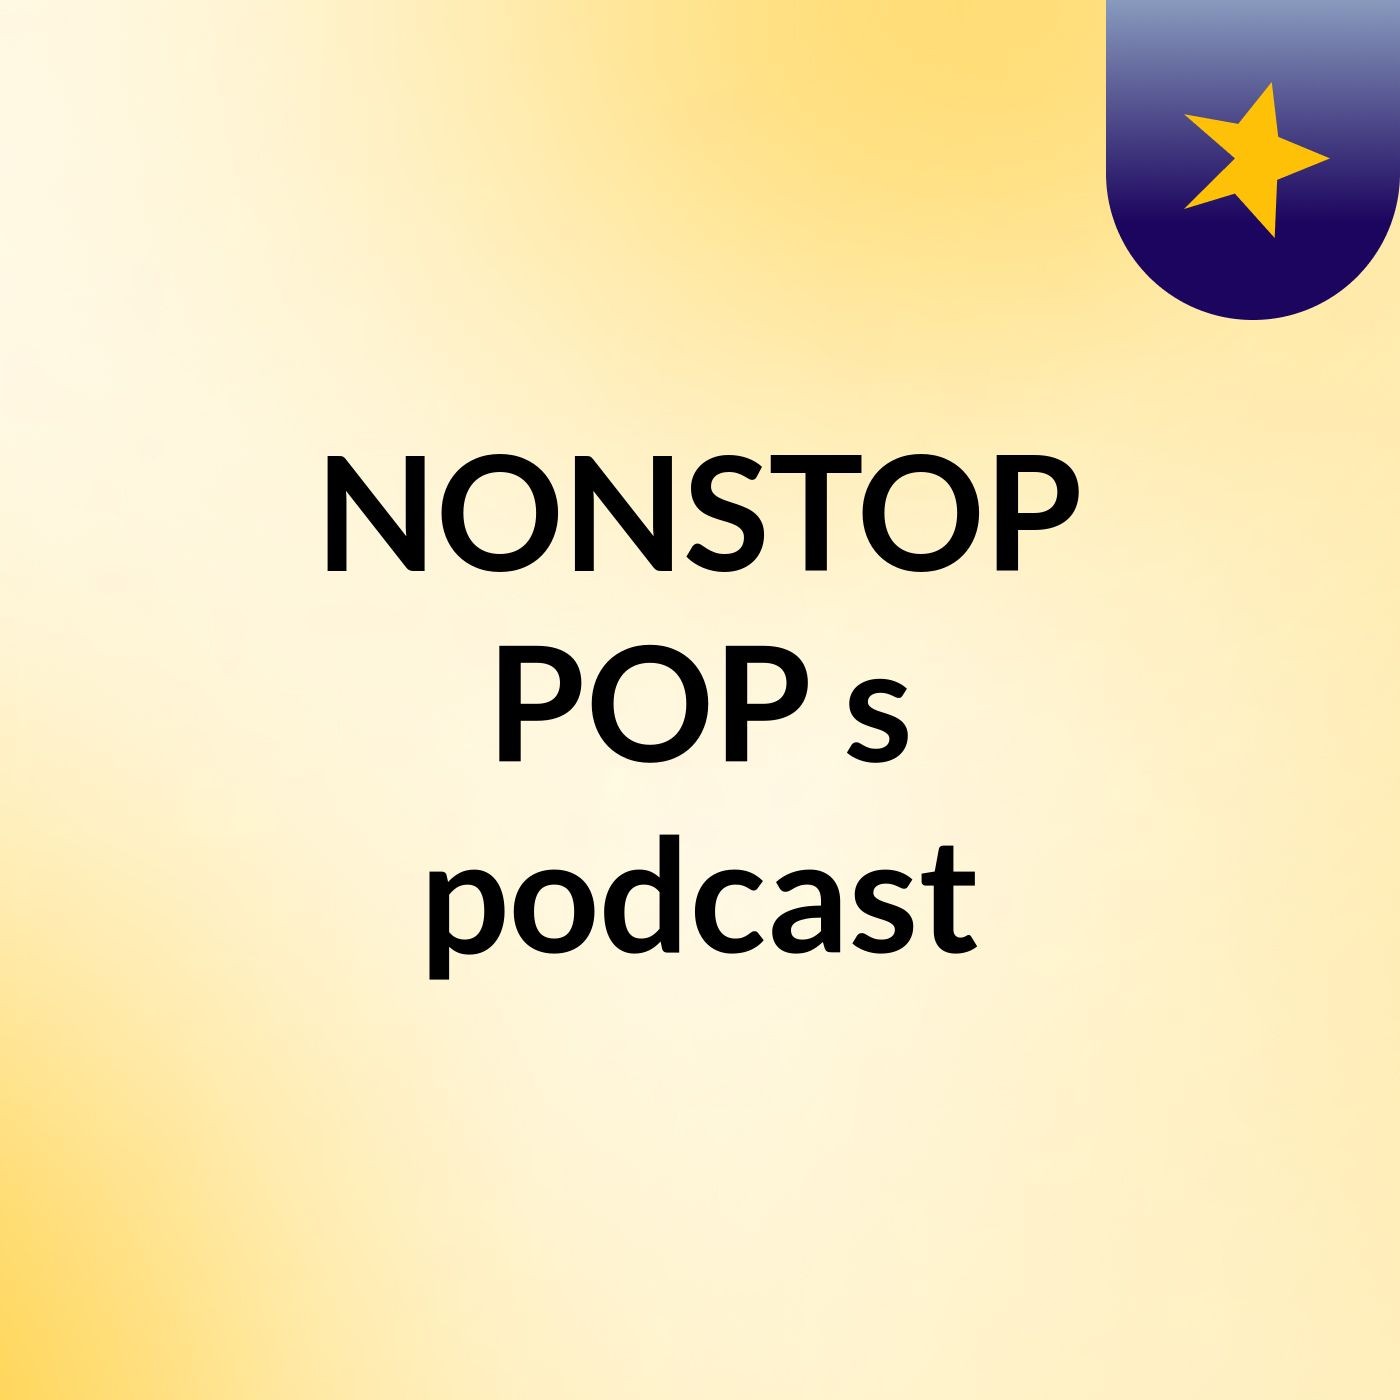 NONSTOP POP's podcast